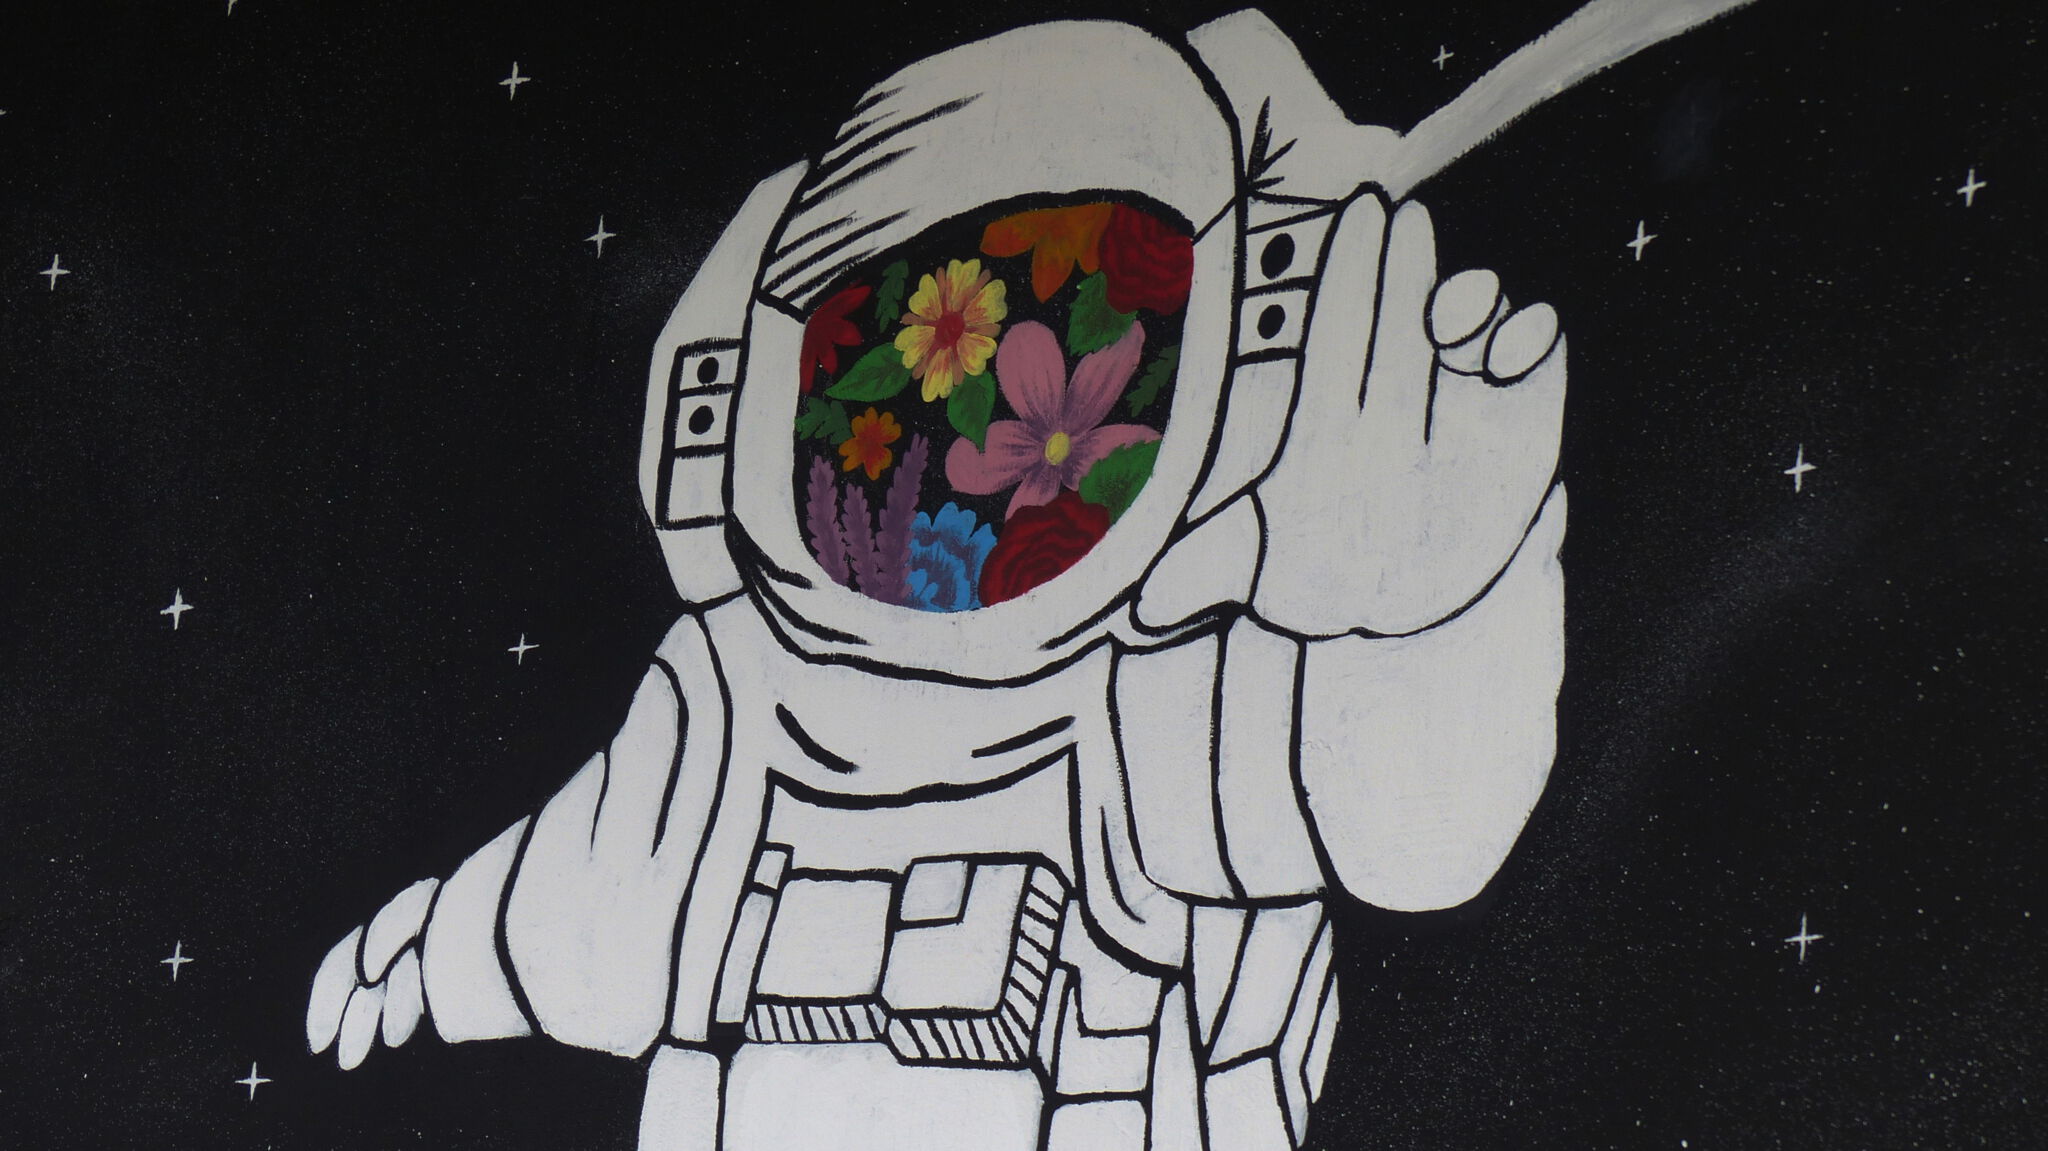 Unknown&mdash;Astronaut